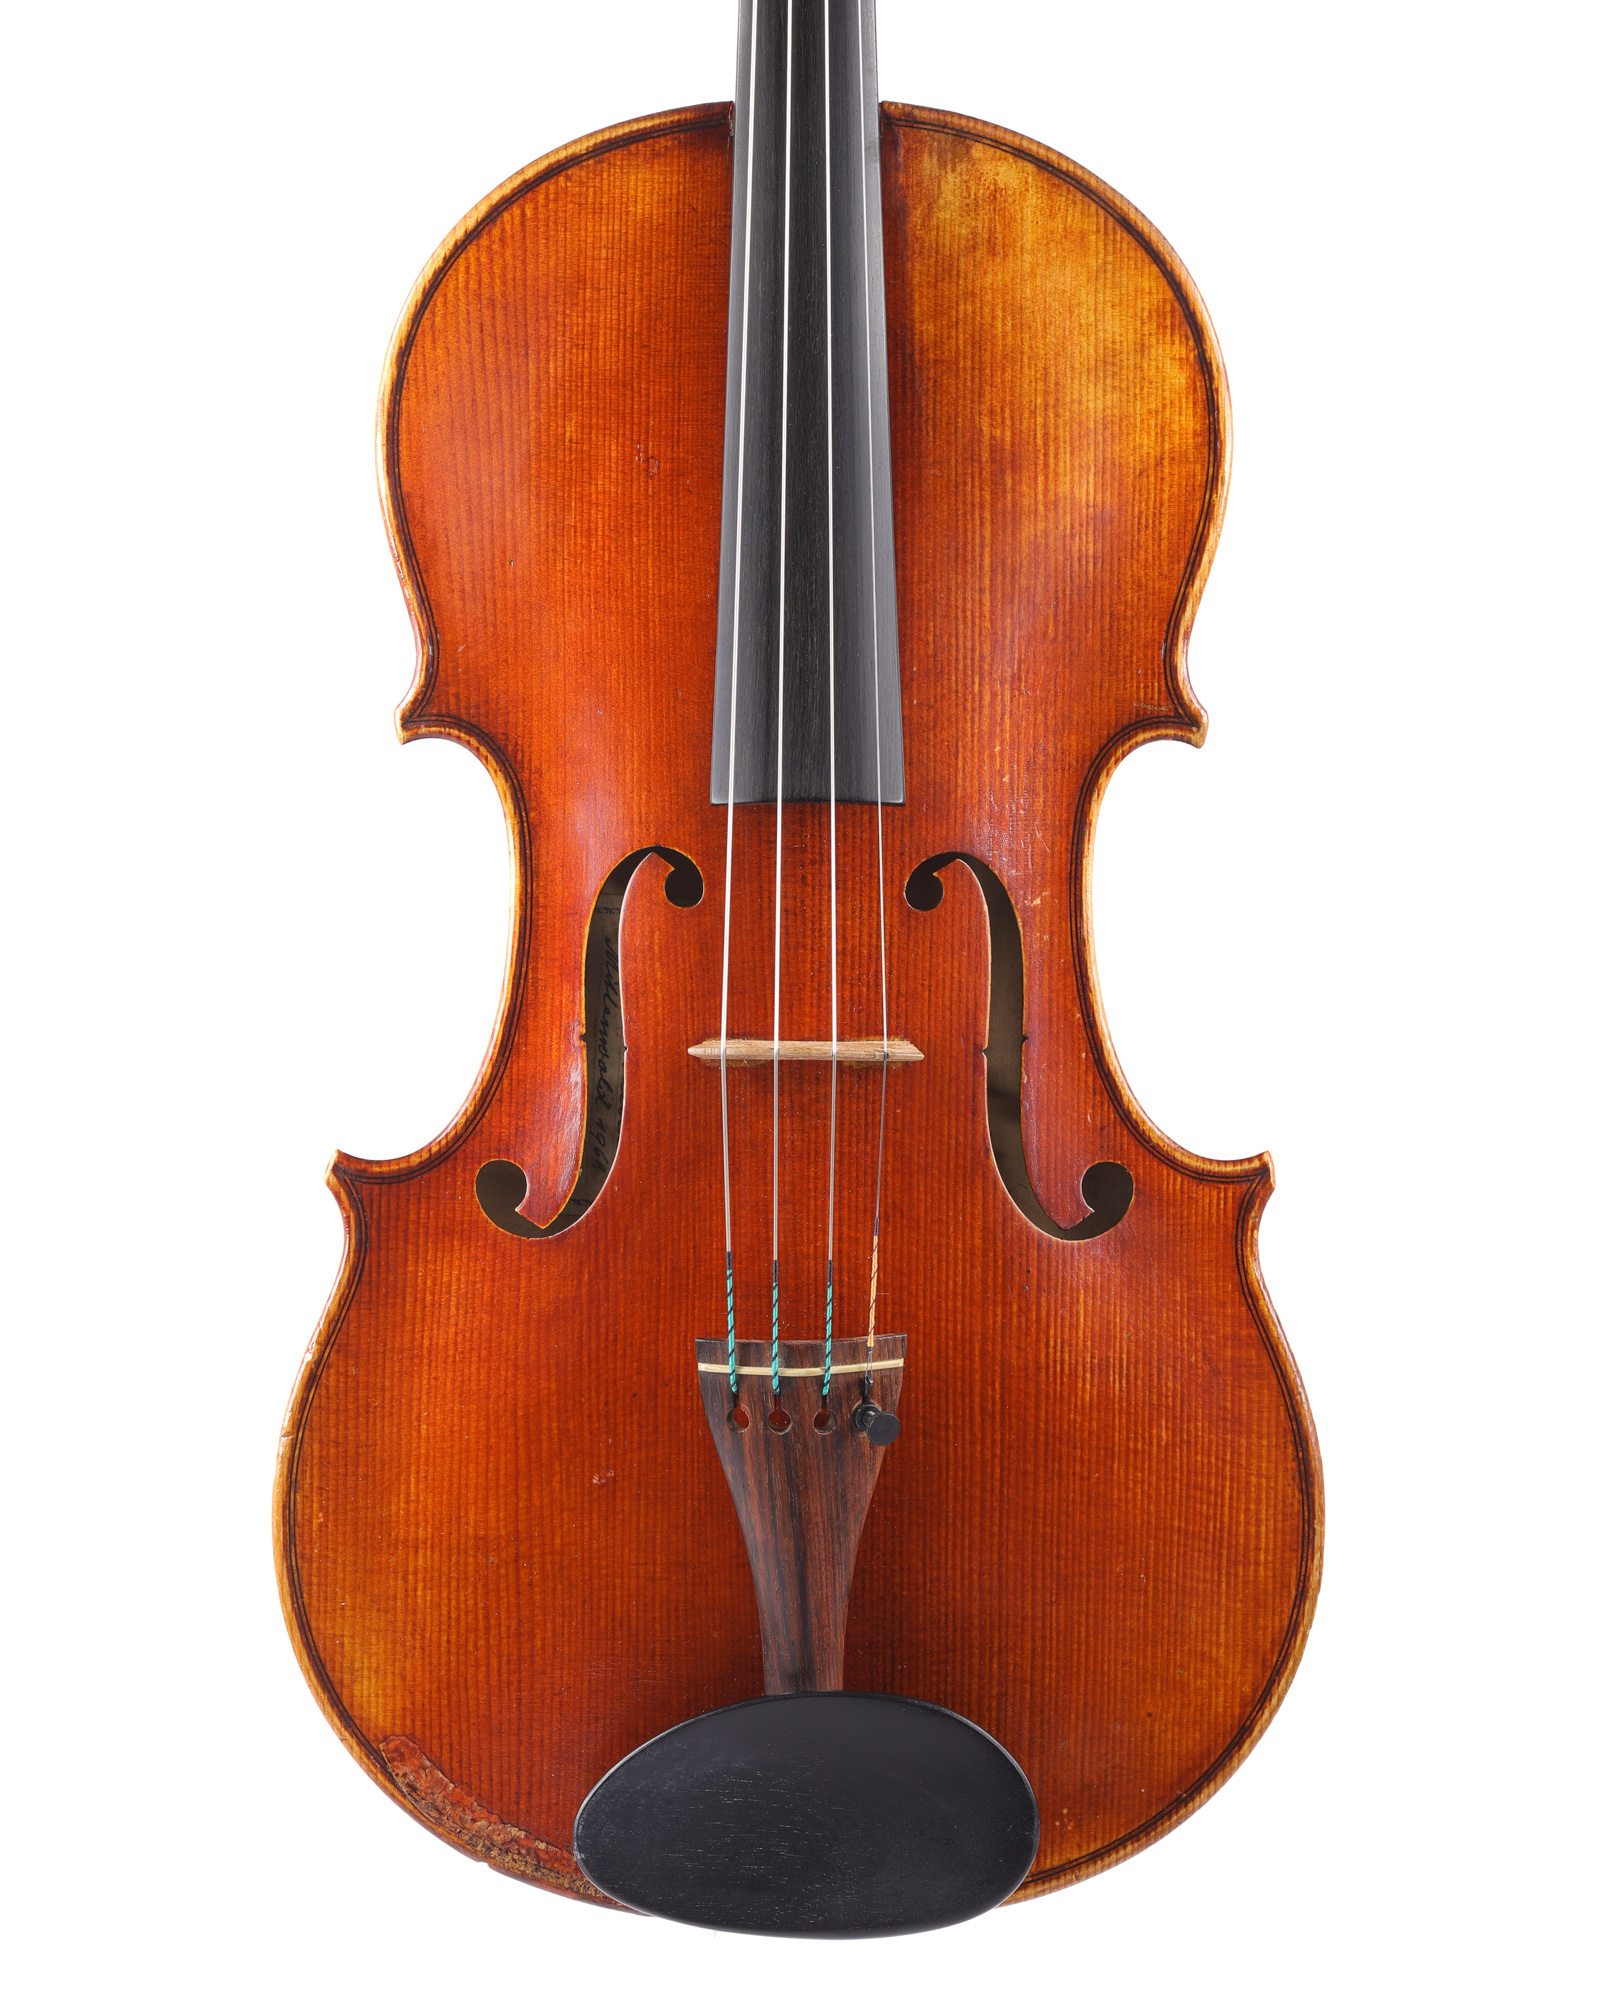 Leo Aschauer 16 3/4" viola, 1961, Mittenwald, GERMANY